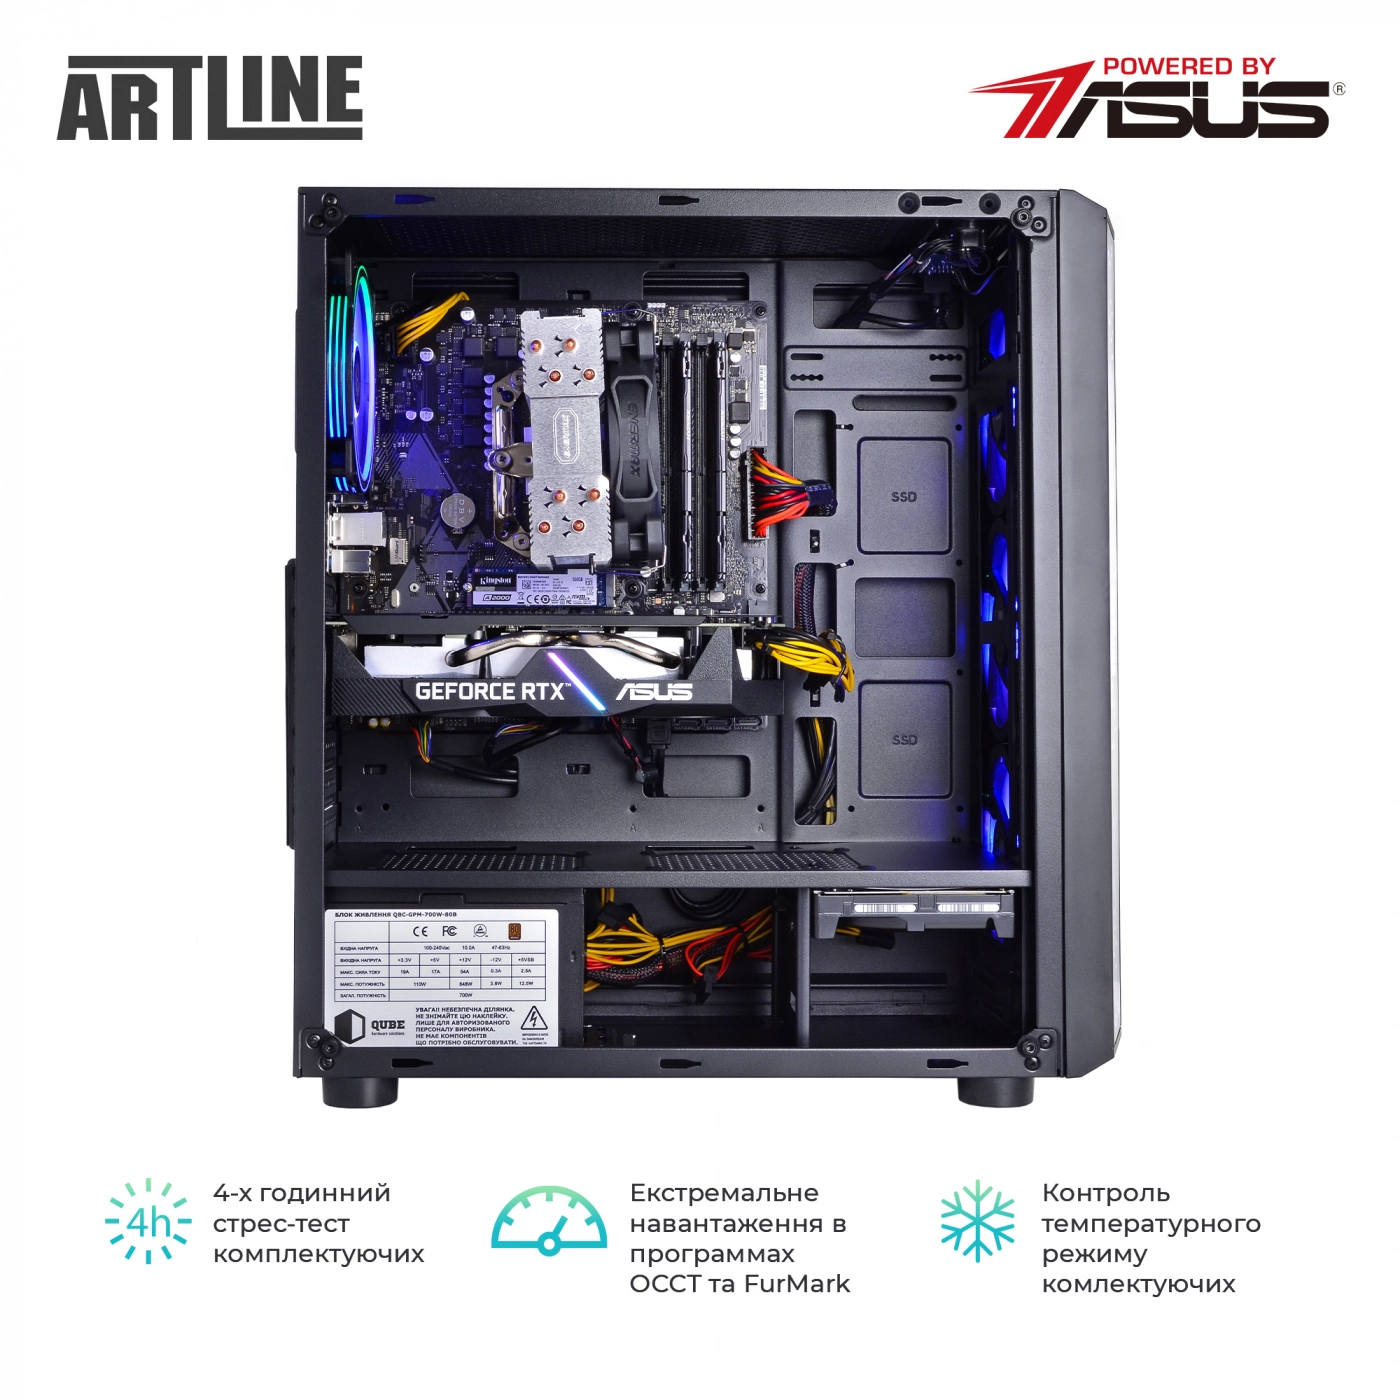 Купить Компьютер ARTLINE Gaming X75v20 - фото 8